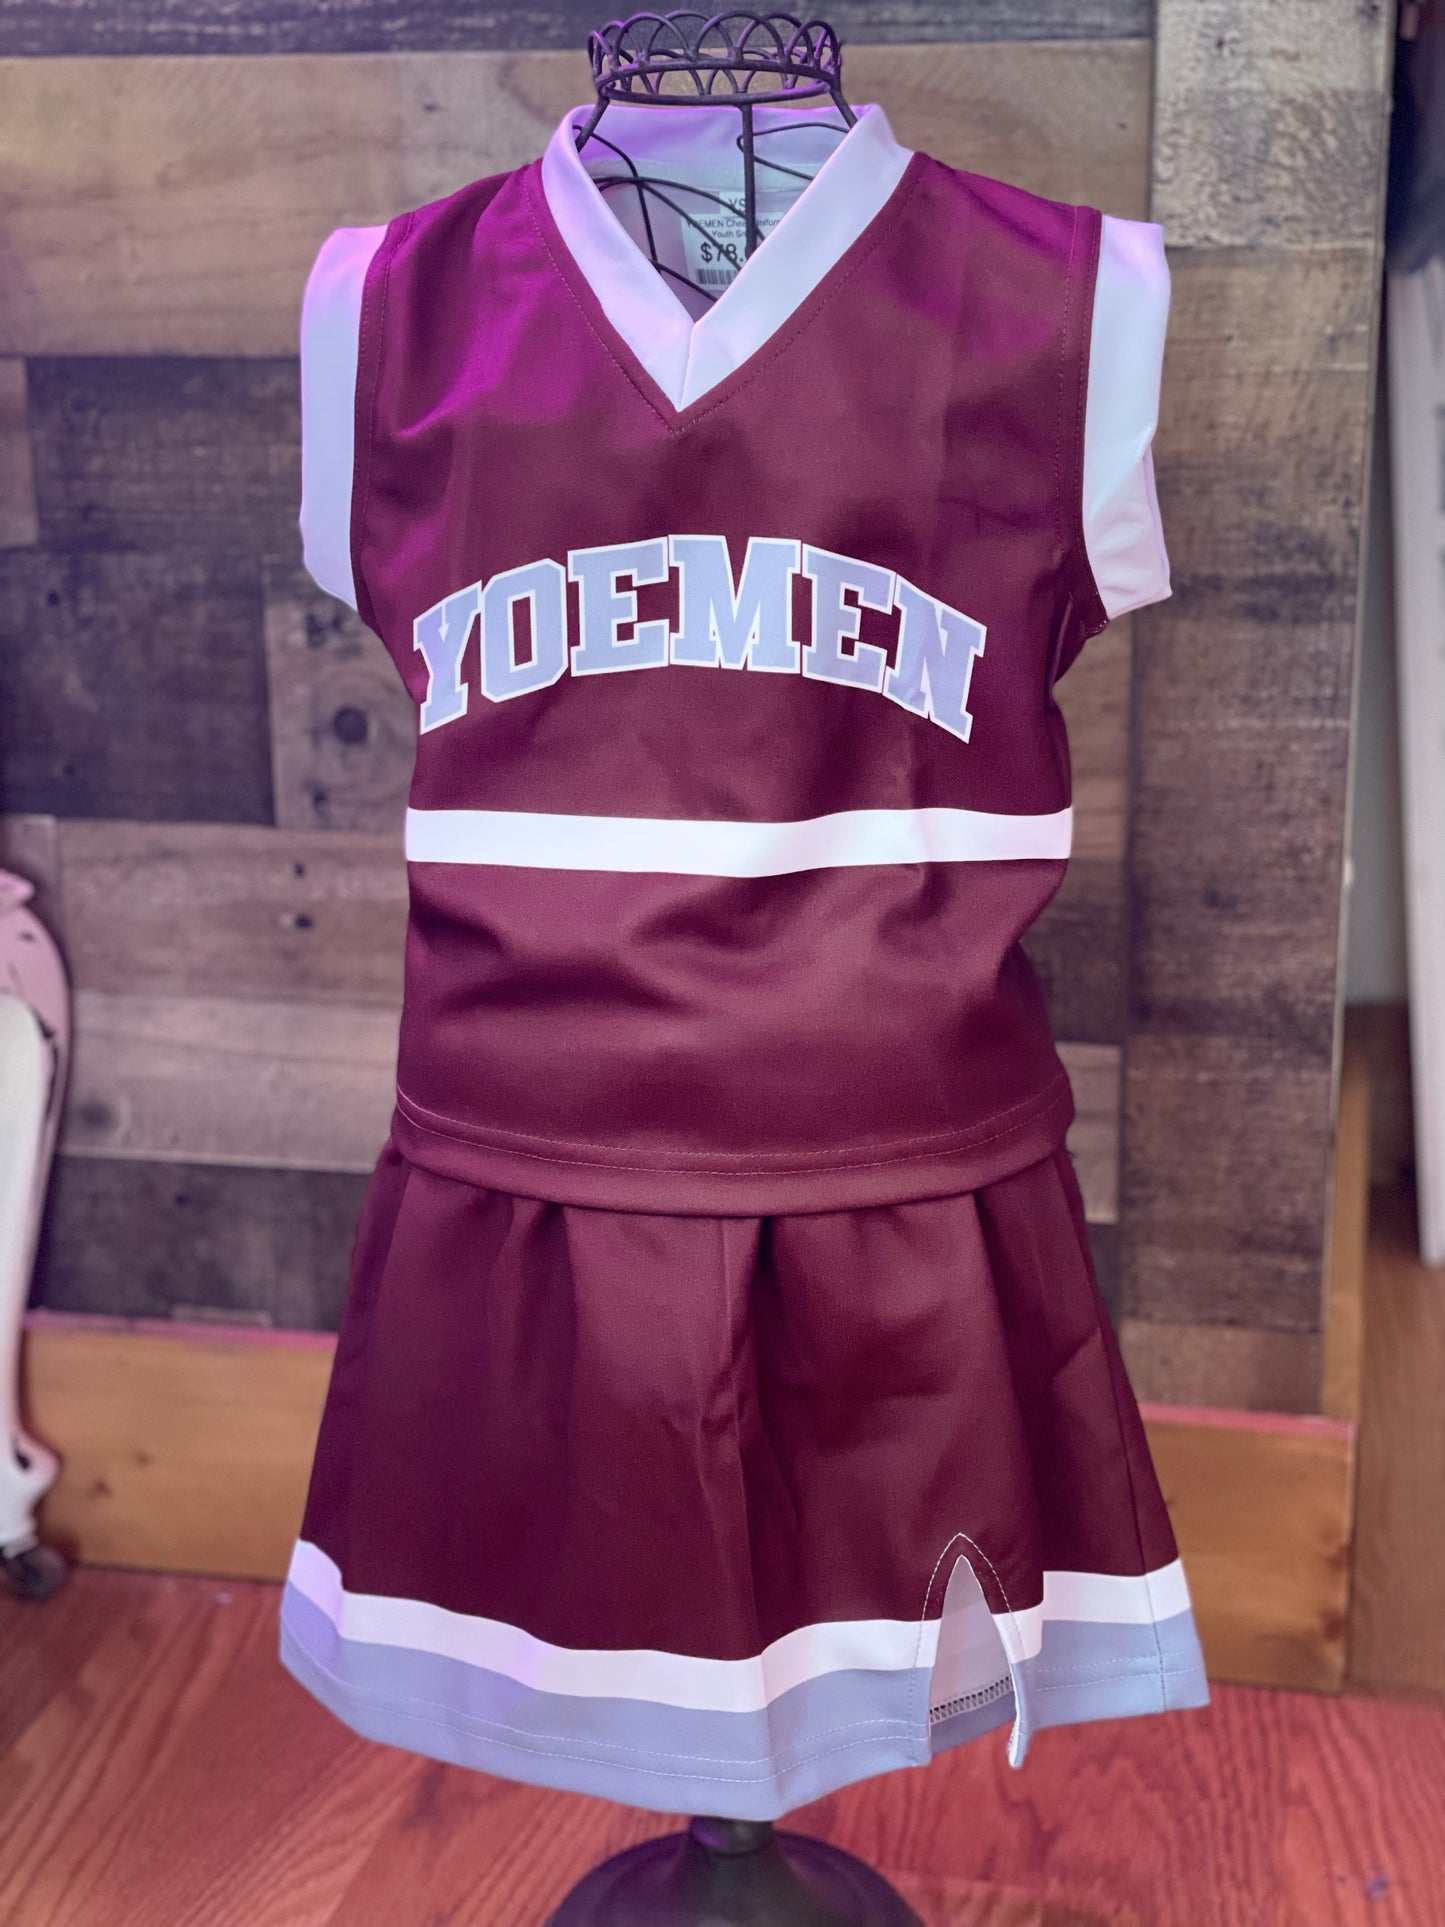 YOEMEN Cheer Uniform